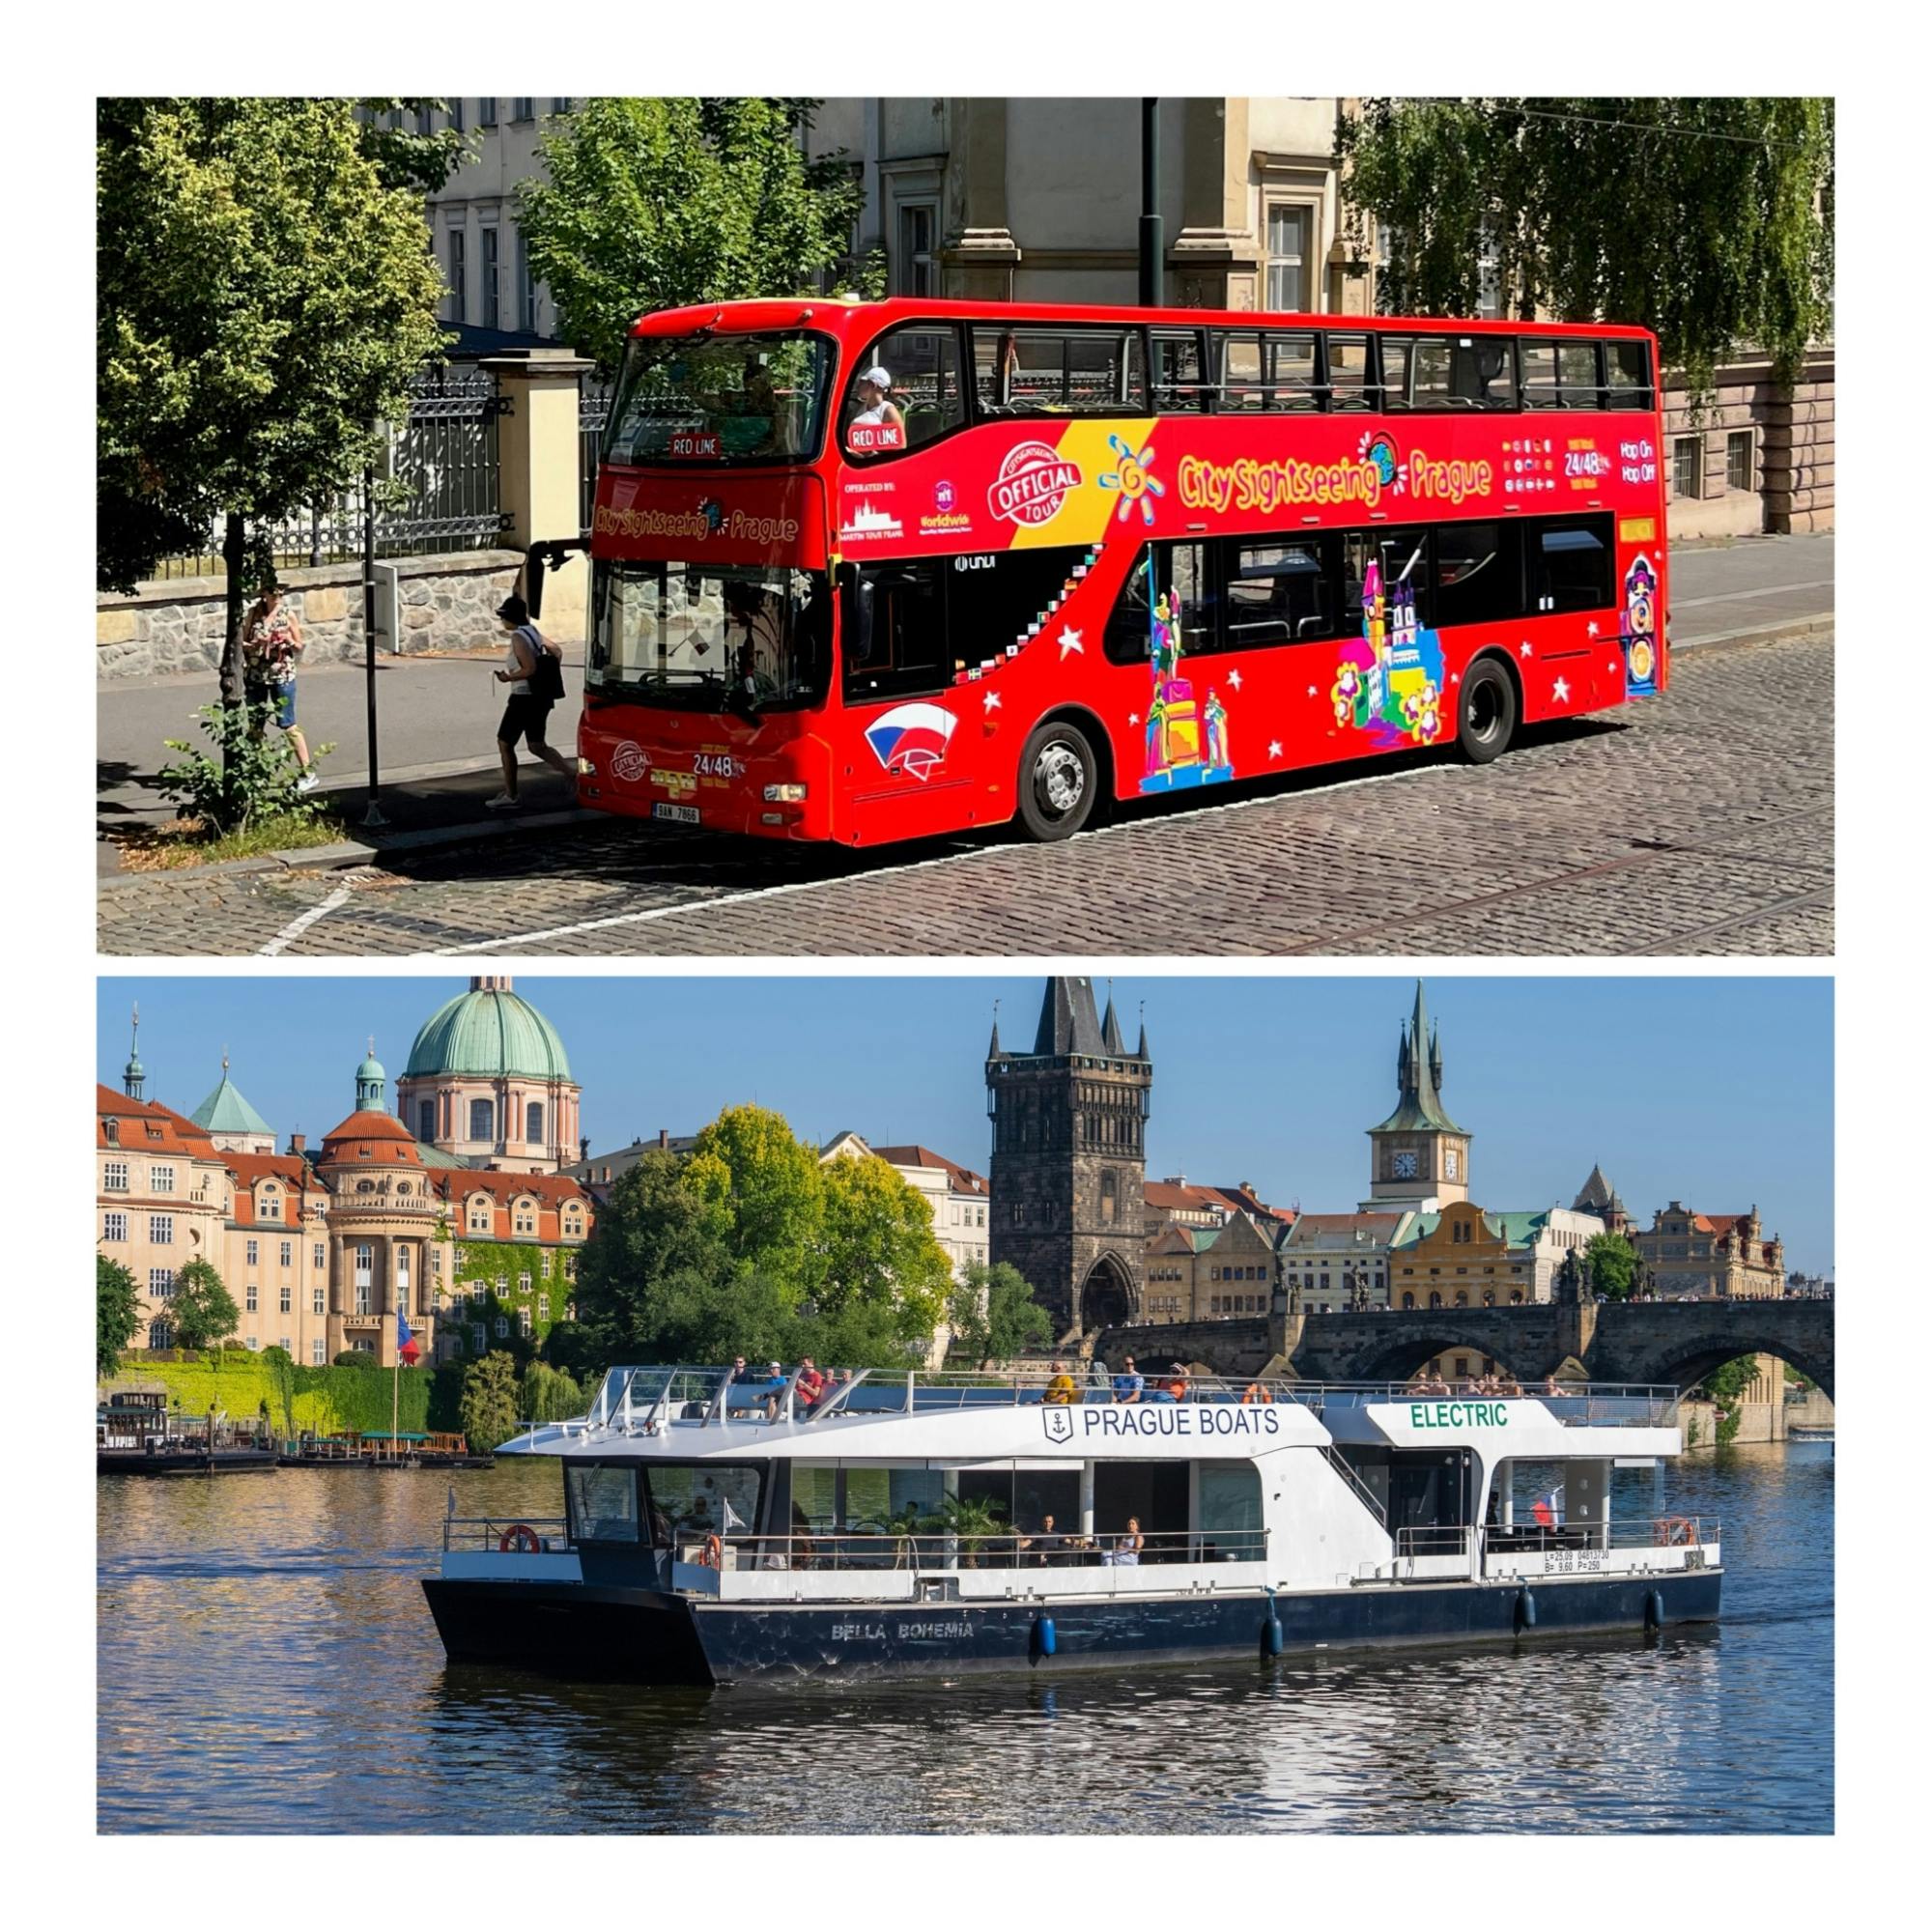 Stadtrundfahrt mit dem Hop-on-Hop-off-Bus durch Prag